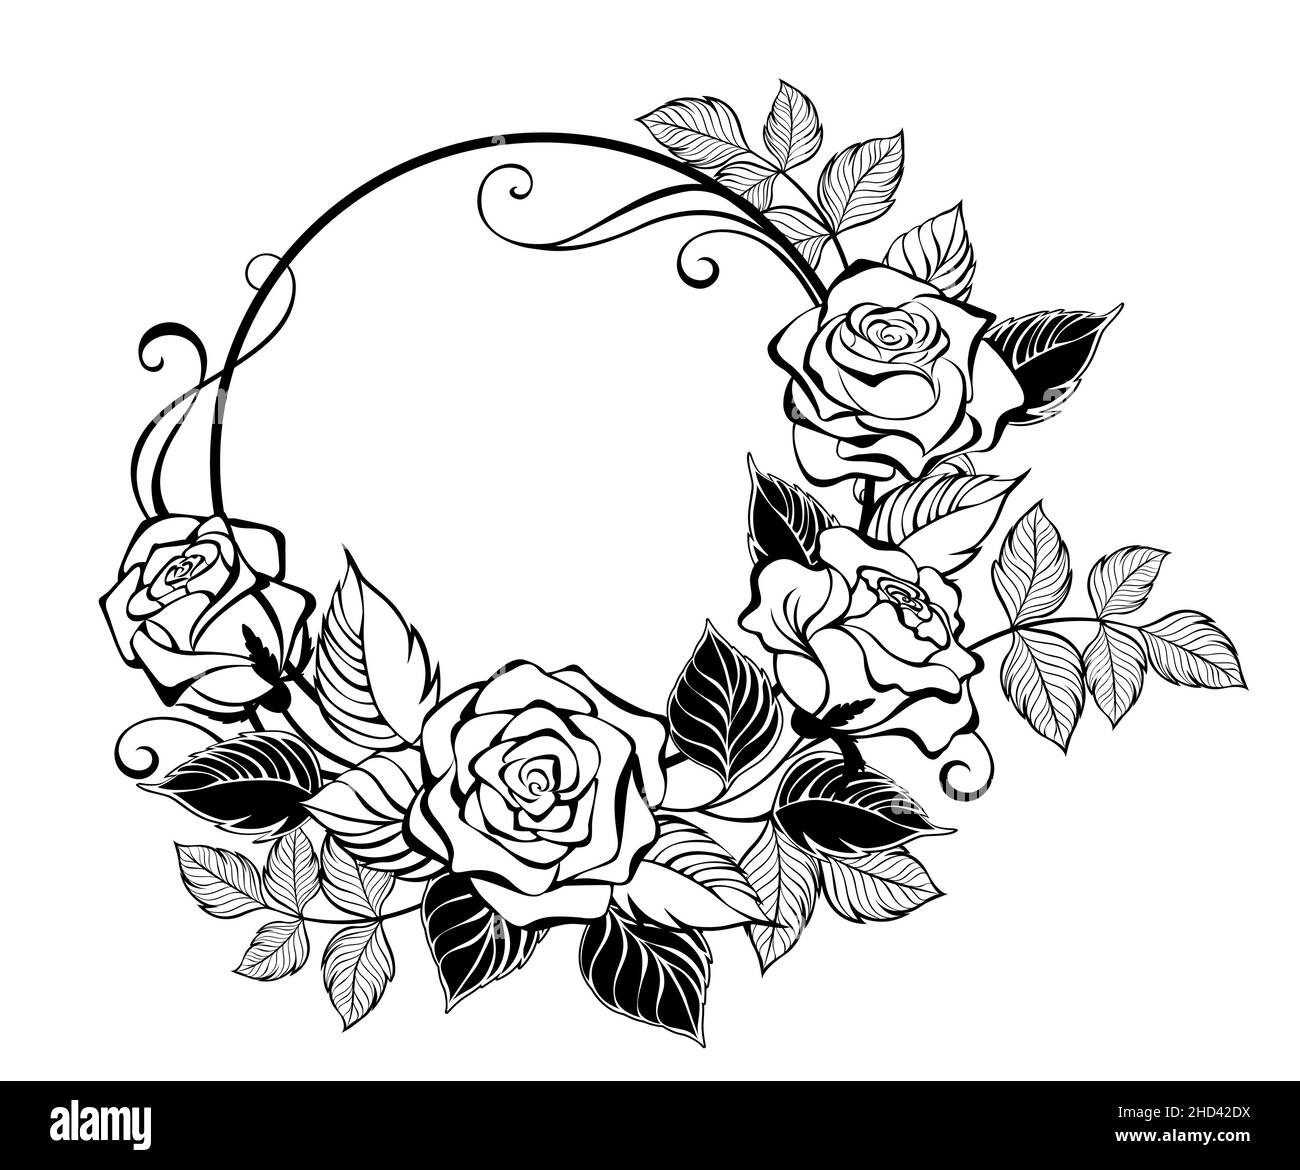 Cadre rond, orné de contours, branche de rose dessinée artistiquement avec des feuilles stylisées sur fond blanc.Contour rose. Illustration de Vecteur